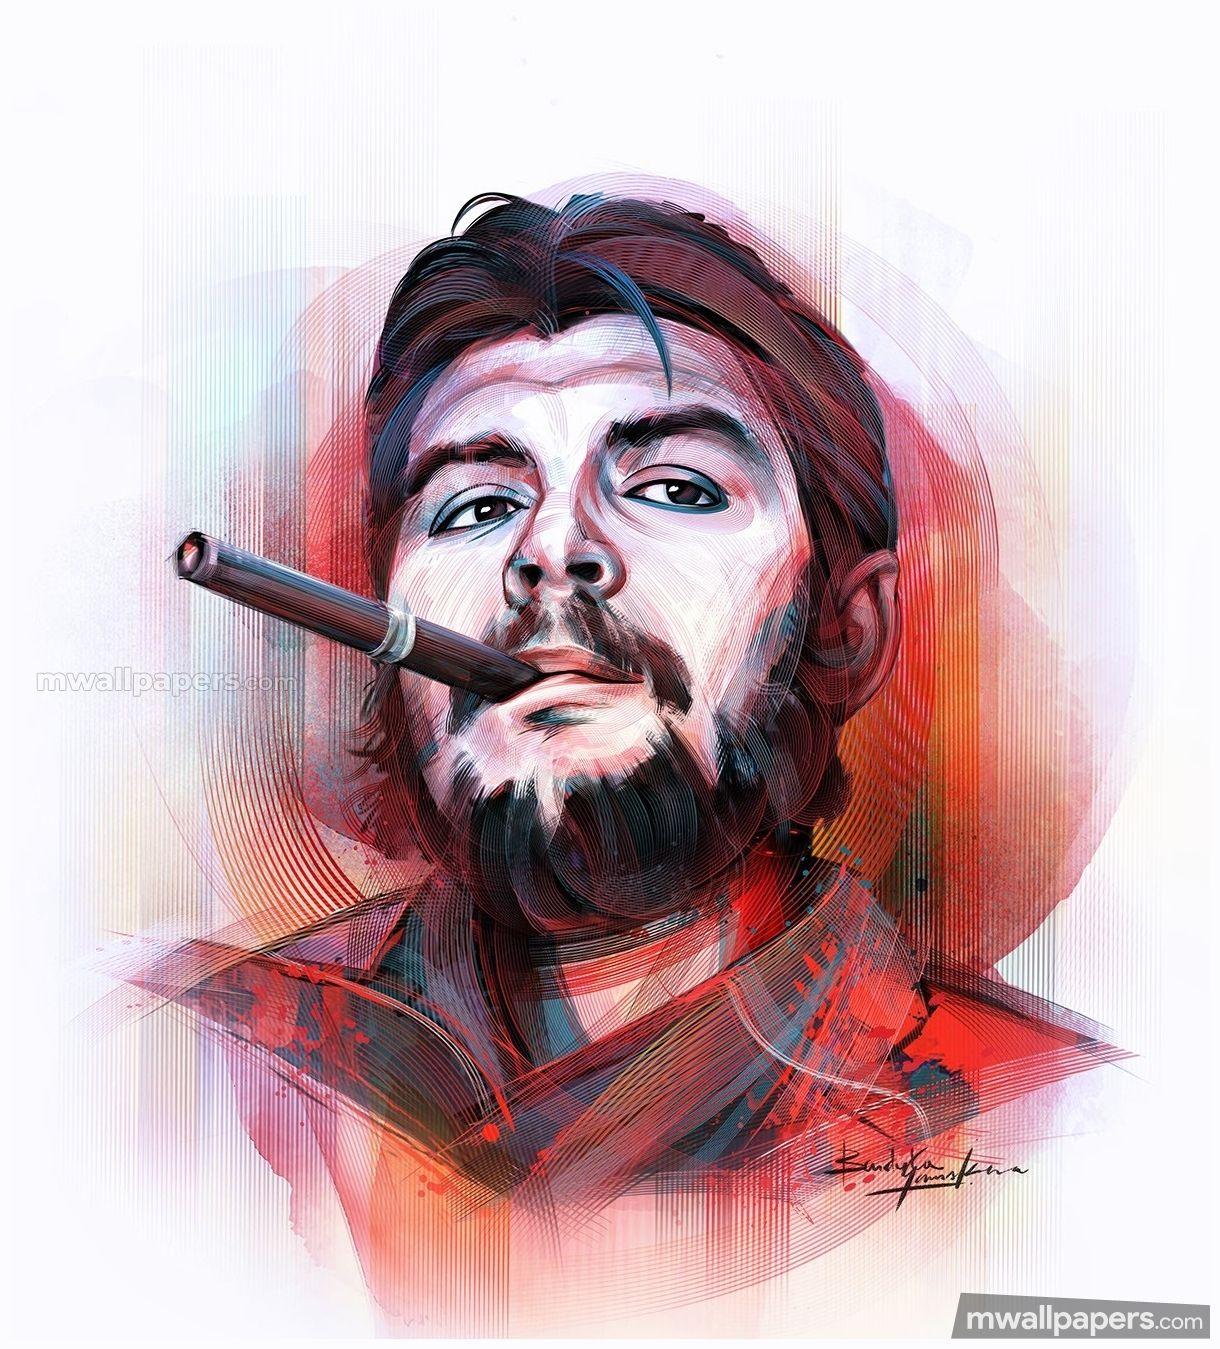 Guevara ideas. ernesto che, che guevara art, che guevara image